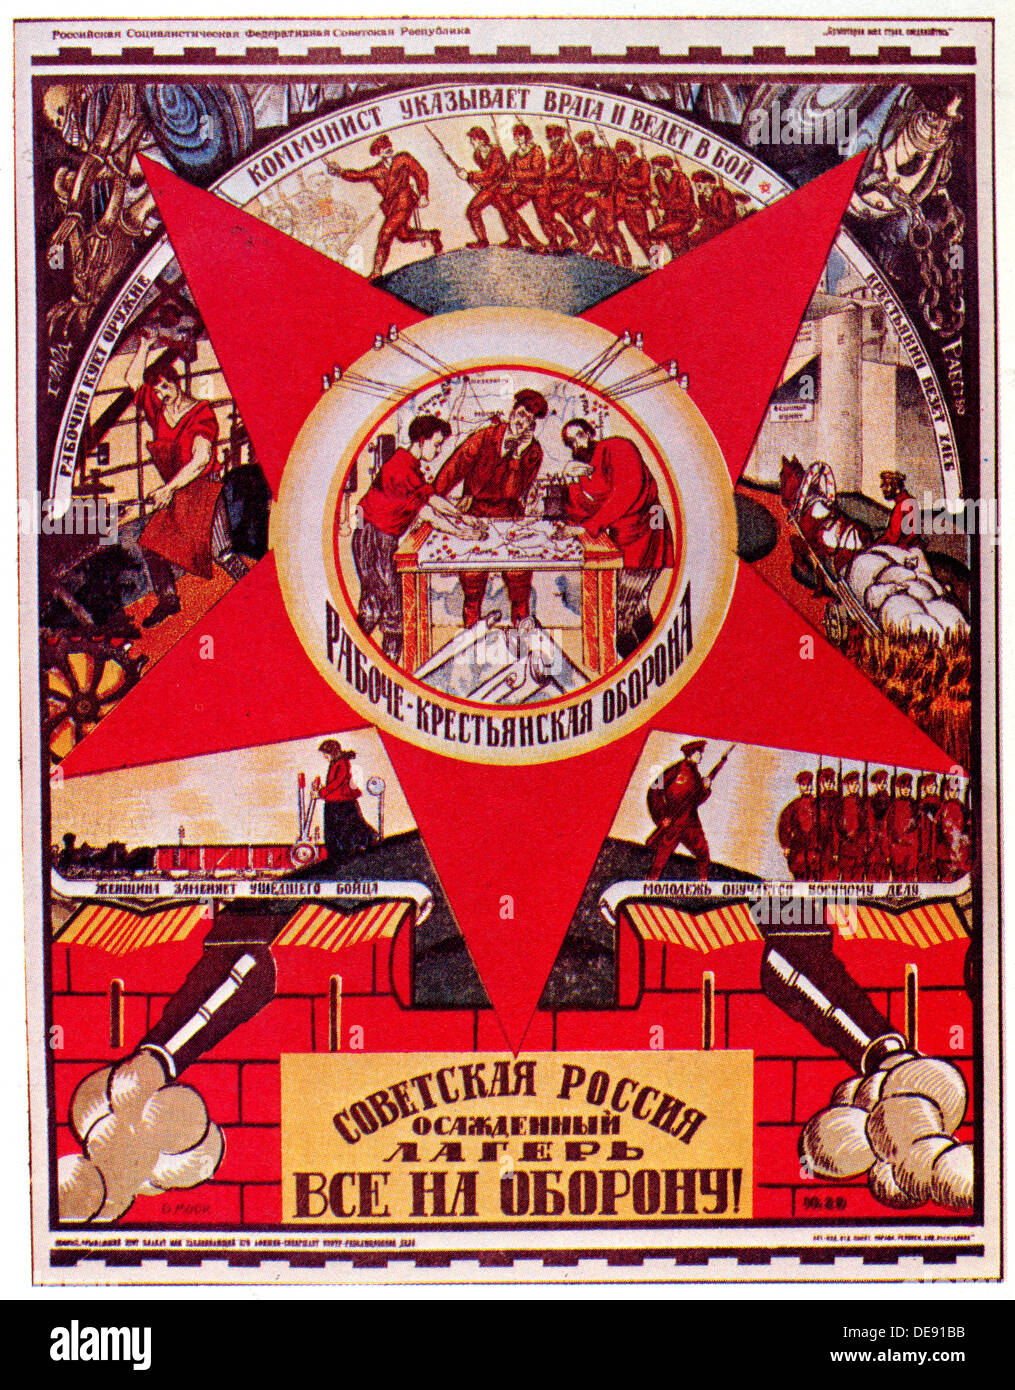 Sowjetrussland wird belagert. Alle zur Verteidigung! (Poster), 1919. Künstler: Moor, Dmitri Stachievich (1883-1946) Stockfoto